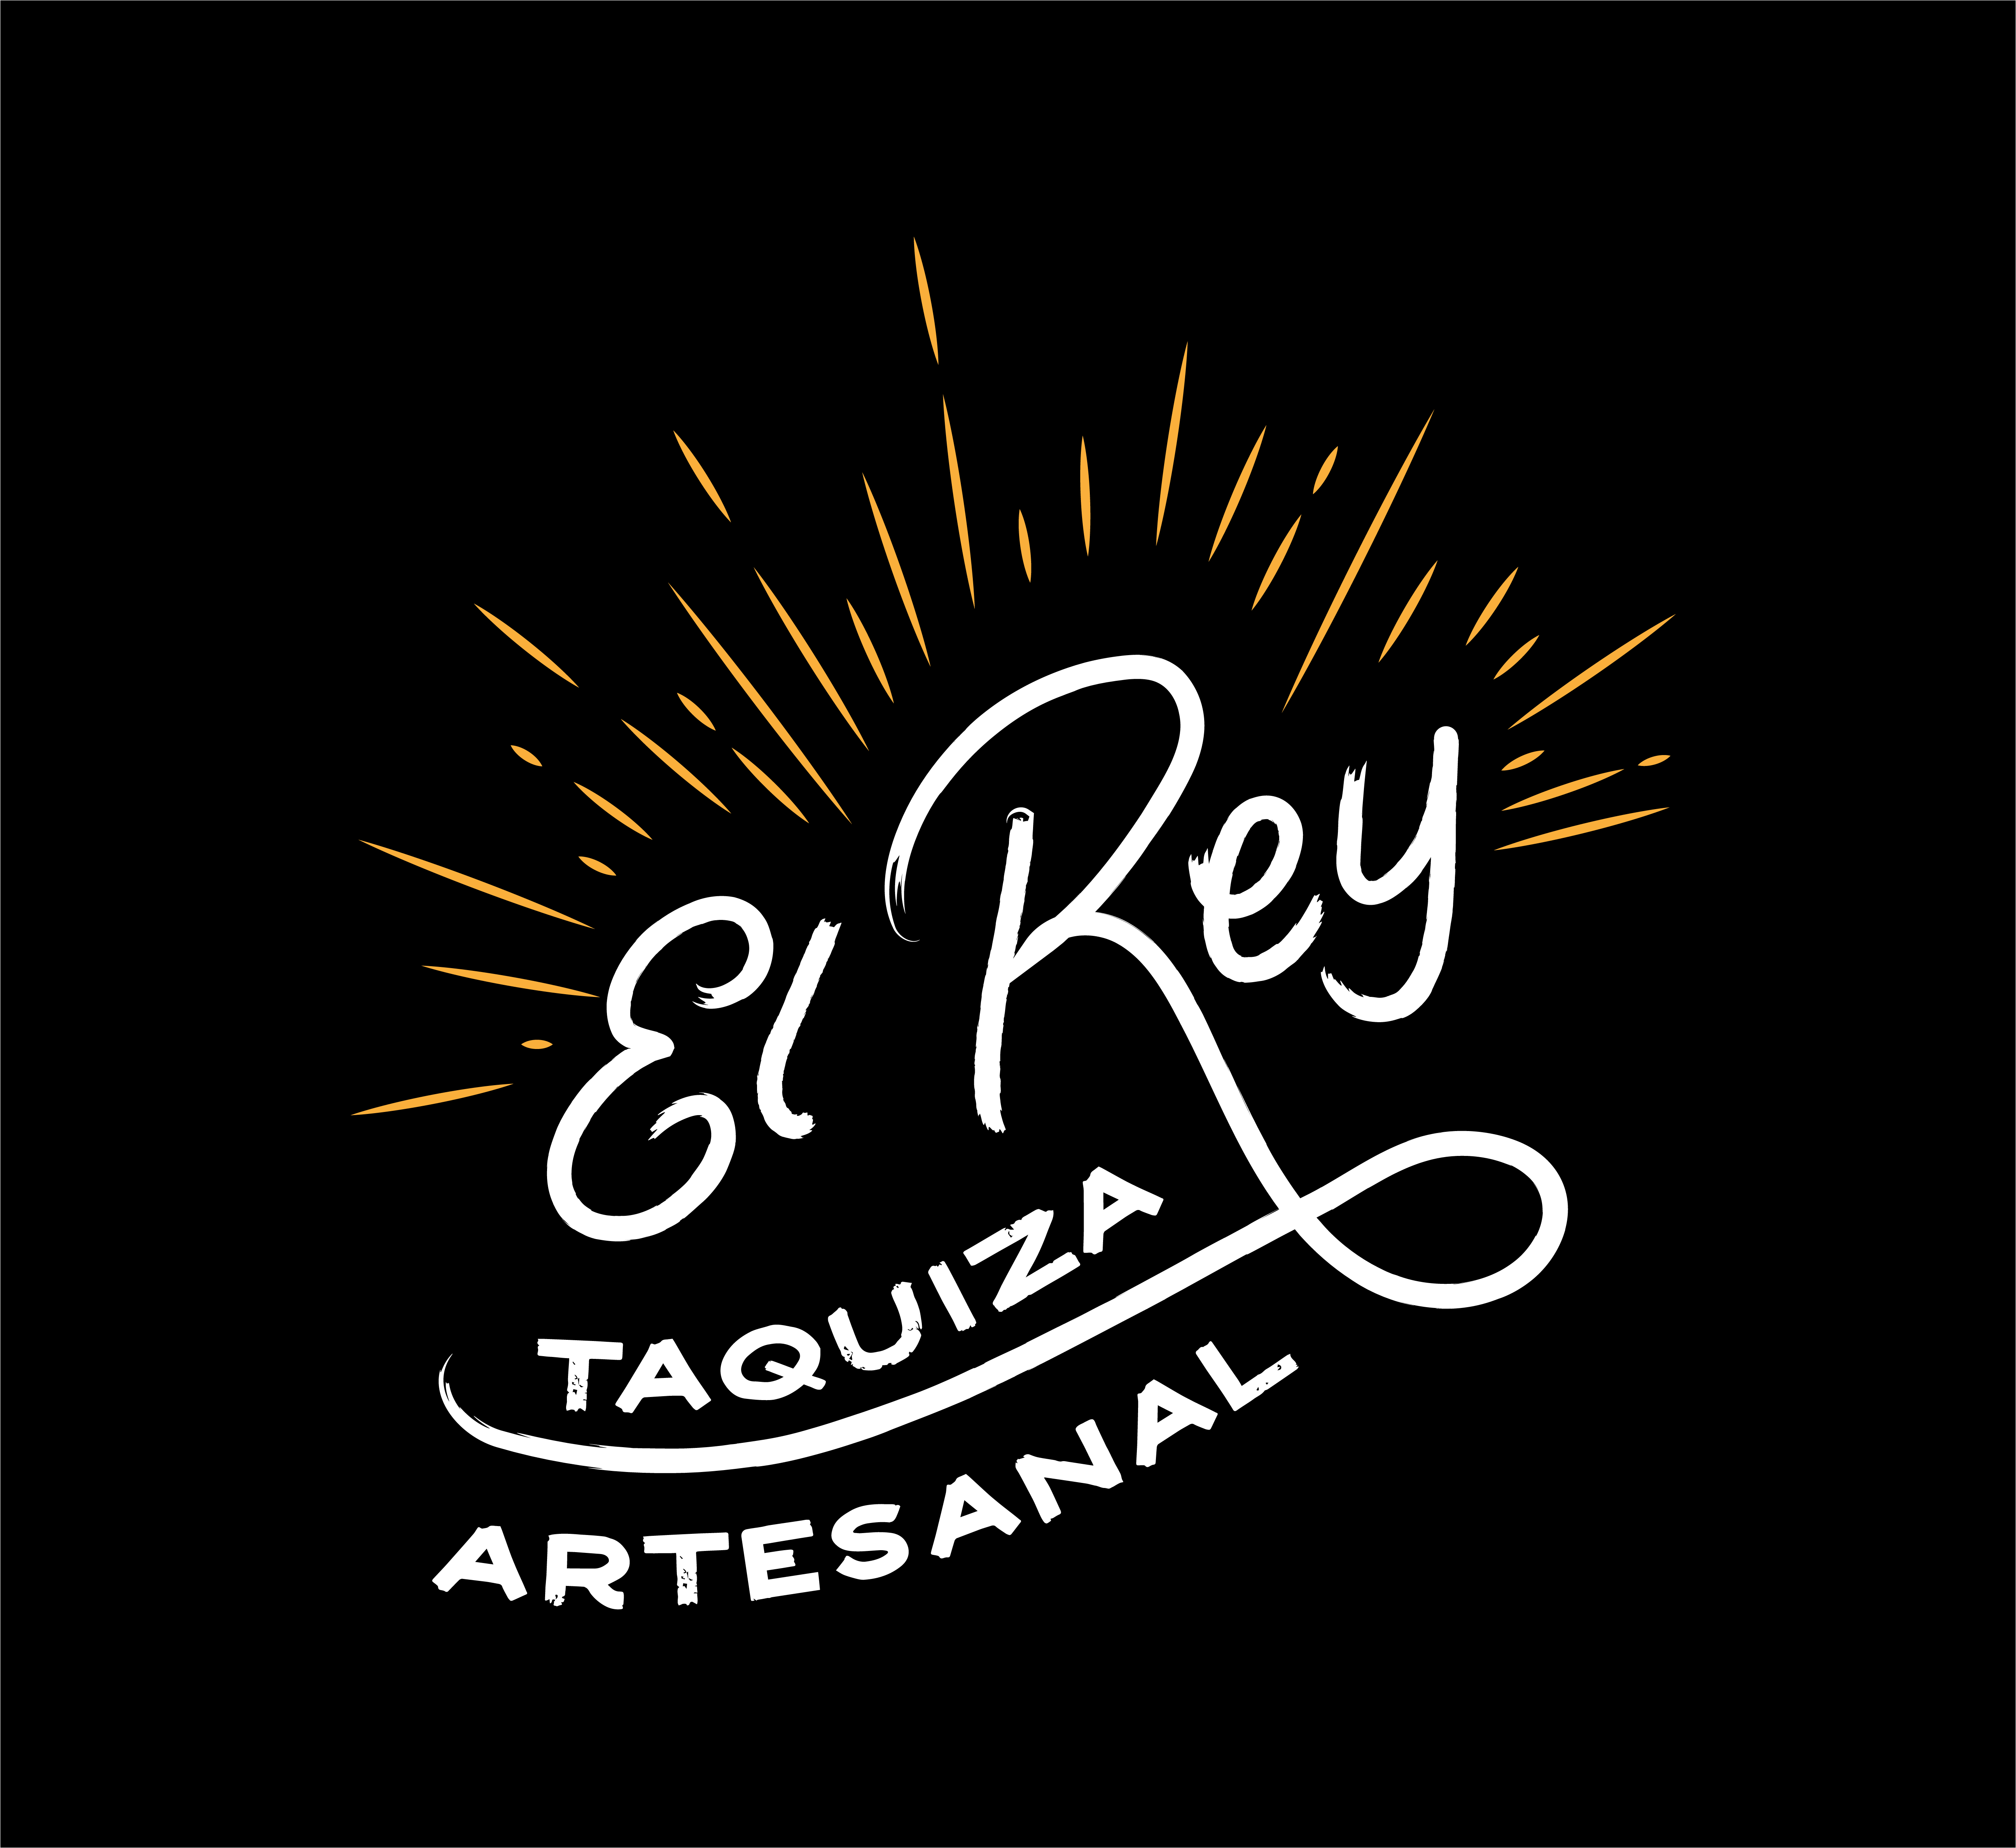 El Rey Taquiza Artesanal 2491 Mission Street